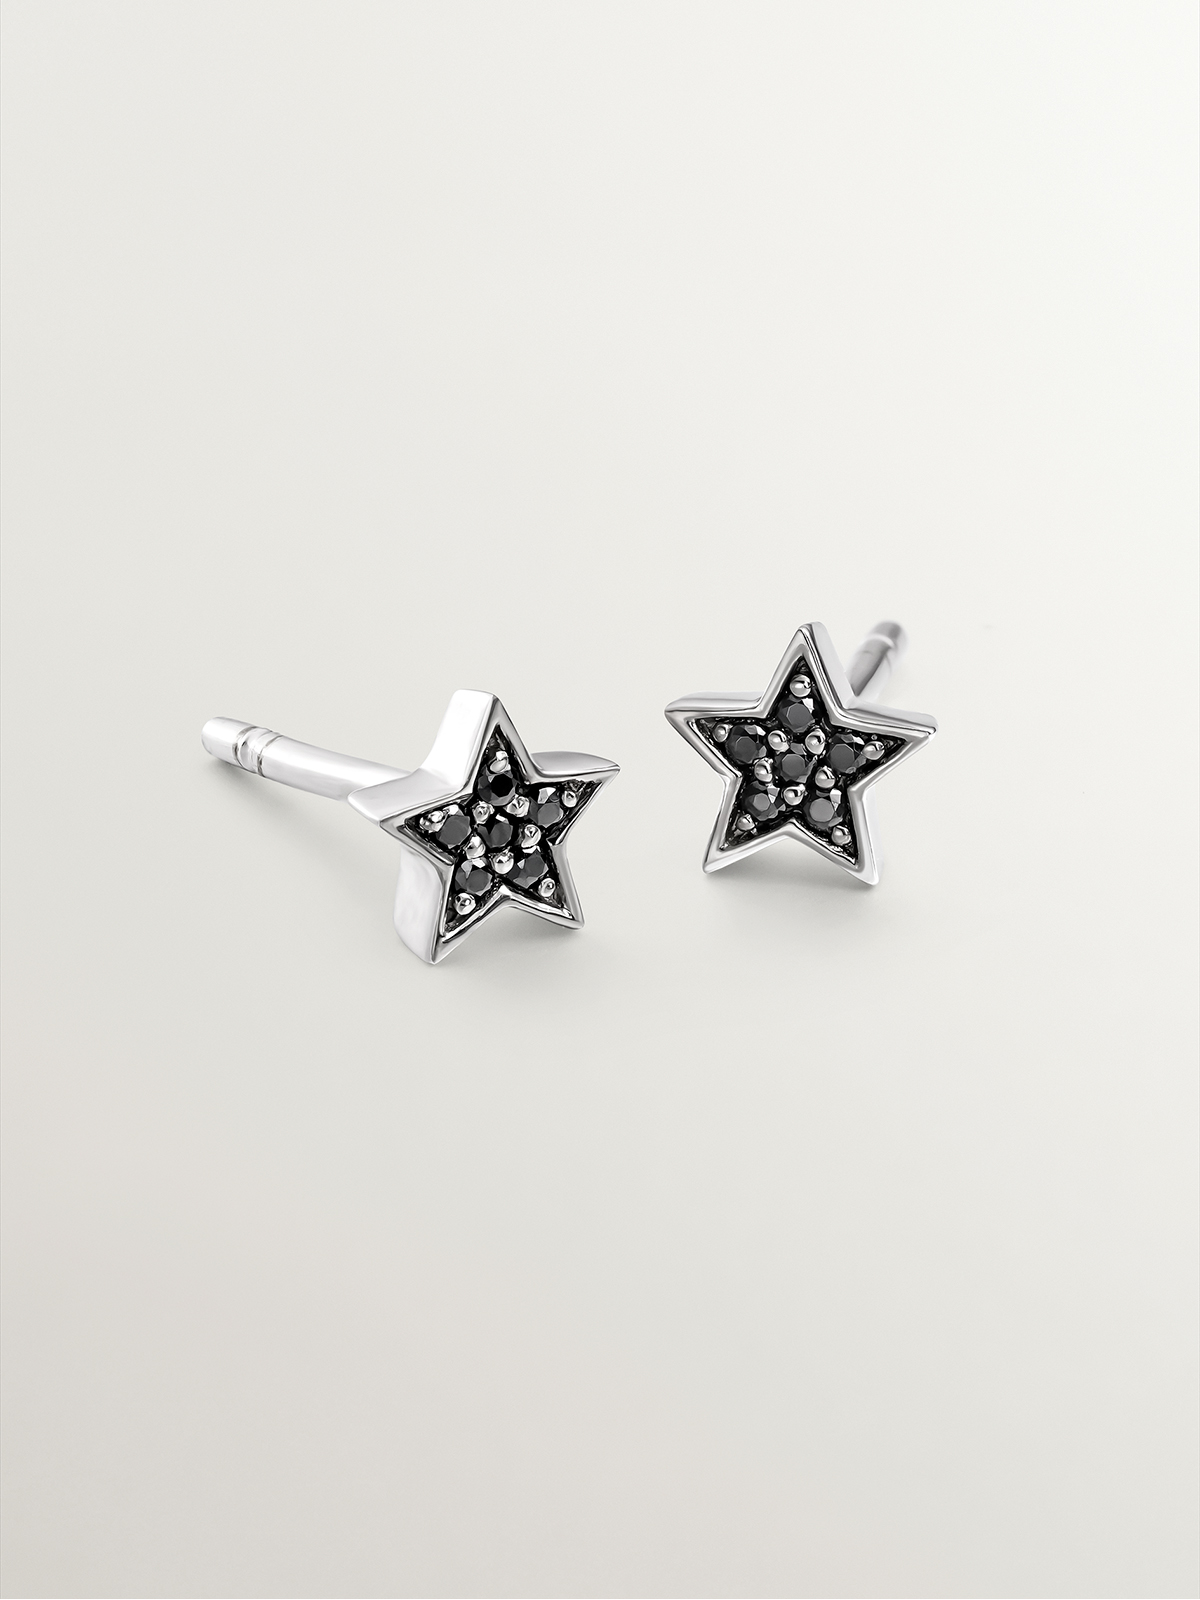 Boucles d'oreilles en argent 925 en forme d'étoile avec spinelles noires.